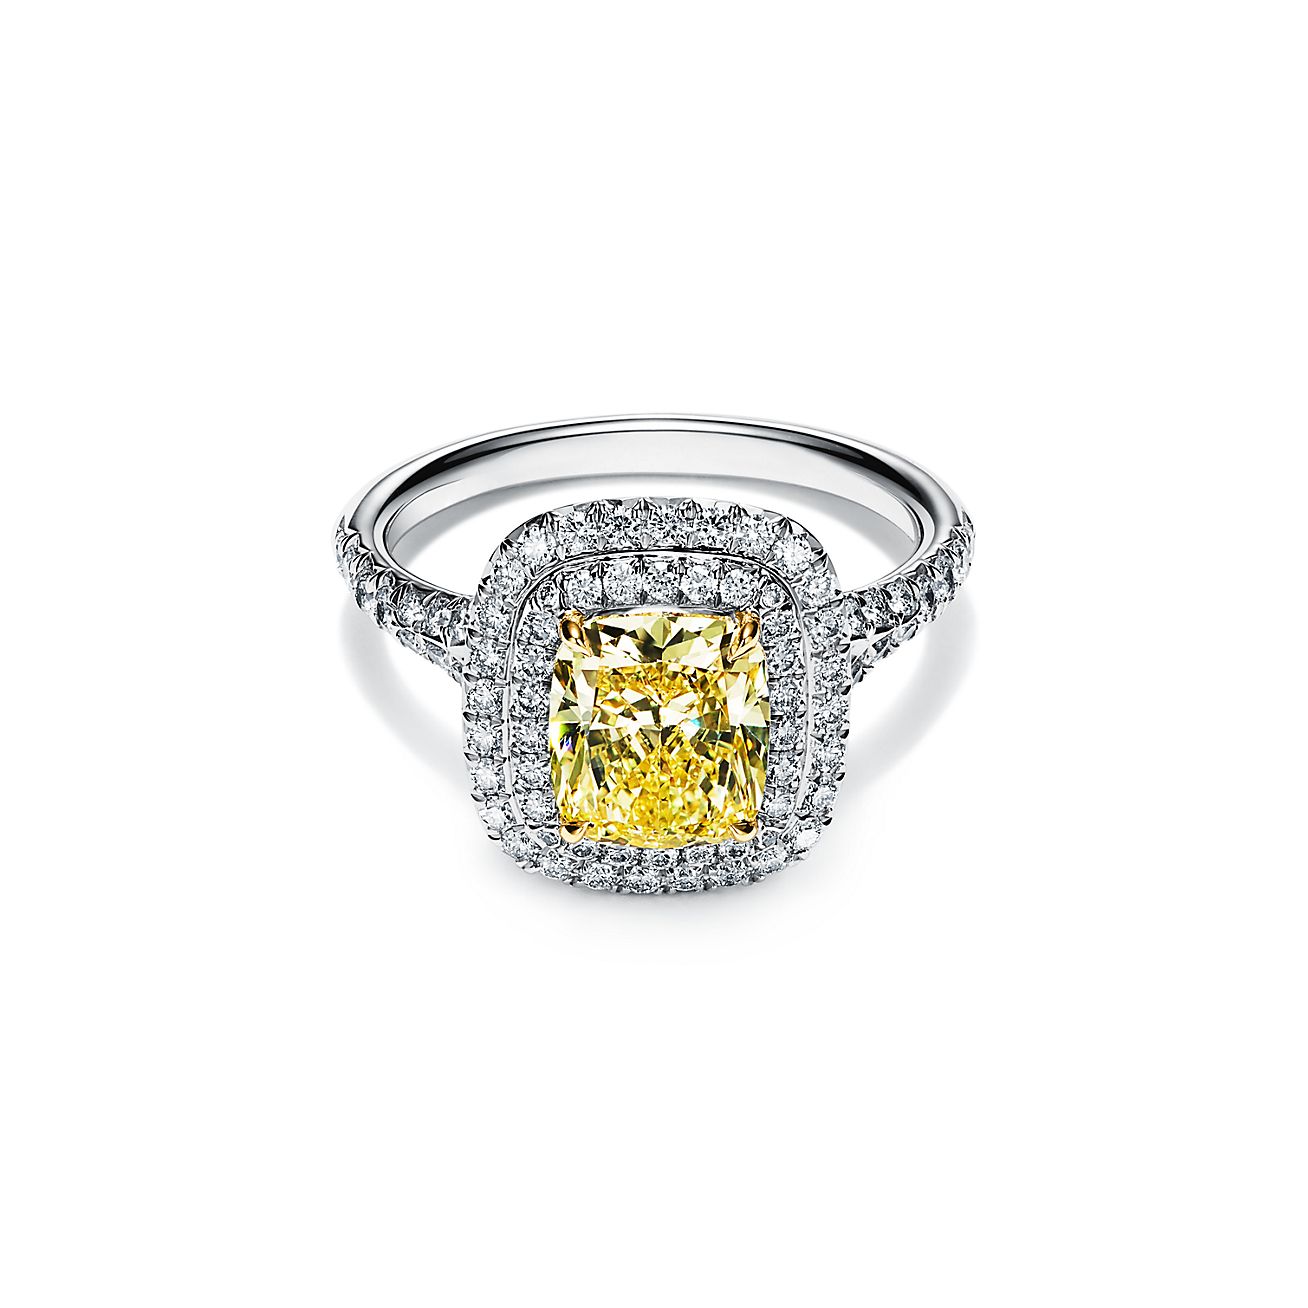 Anillo de compromiso Tiffany Soleste con en platino con doble halo de diamantes talla cojín